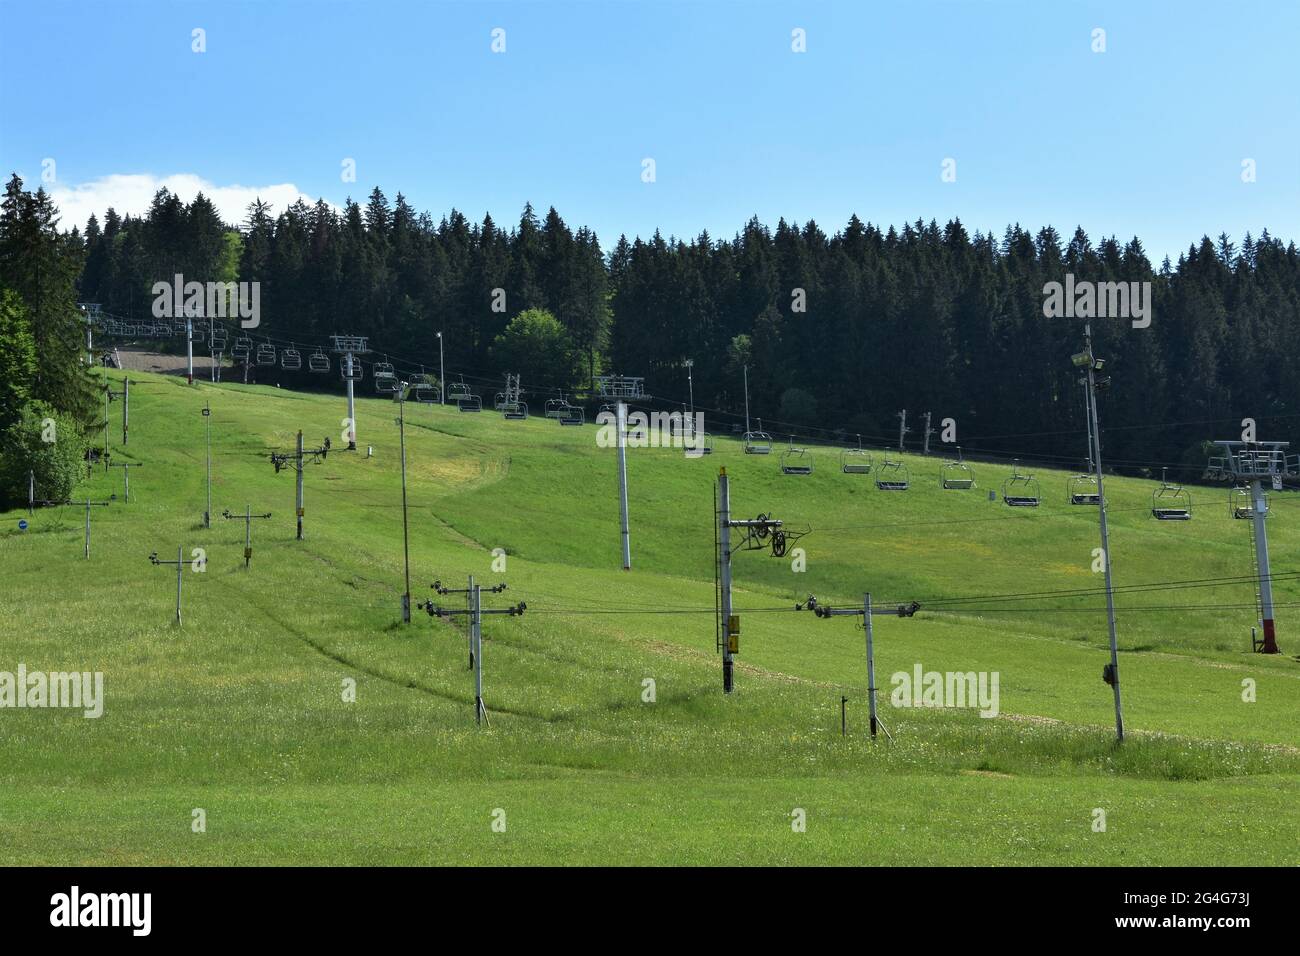 Area sciistica abbandonata, Jasenska dolina, con impianti di risalita situati nella regione Turiec, in Slovacchia, durante l'estate. La collina è coperta di erba verde. Foto Stock